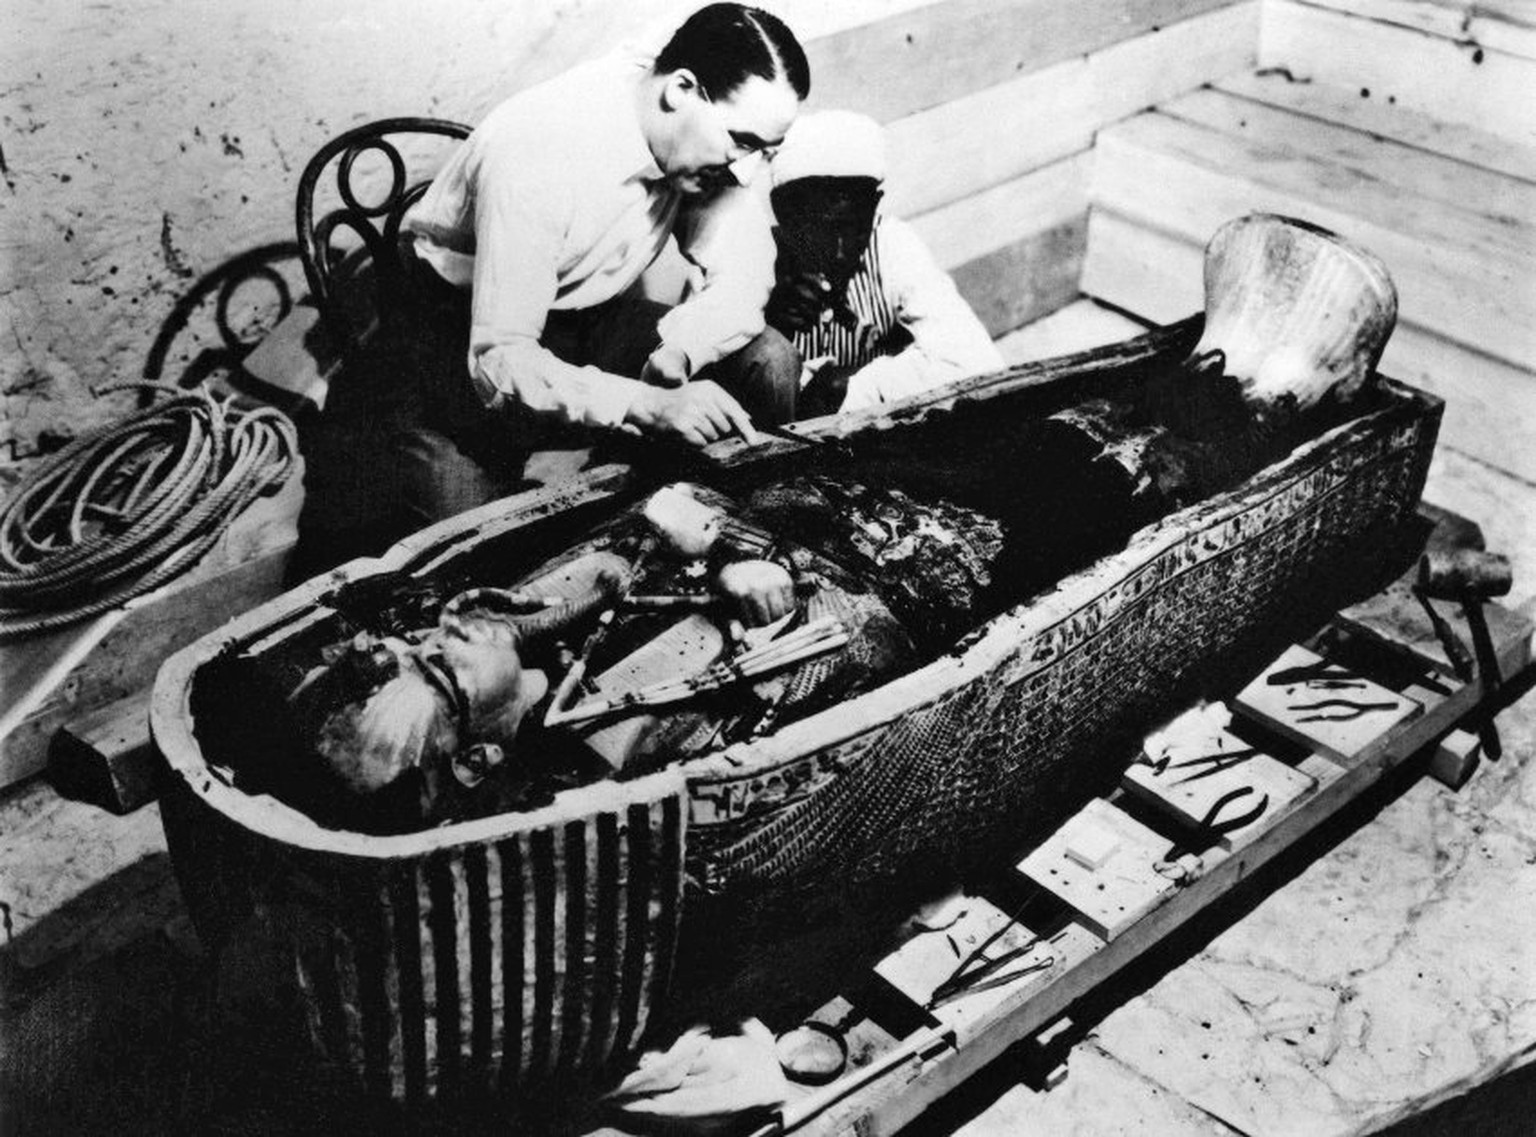 Archäologe im Glück: Dass Howard Carter, der das Grab Tutanchamuns 1922 öffnete, nach seinen spektakulären Funden nicht noch weitersuchte, wäre nachvollziehbar.